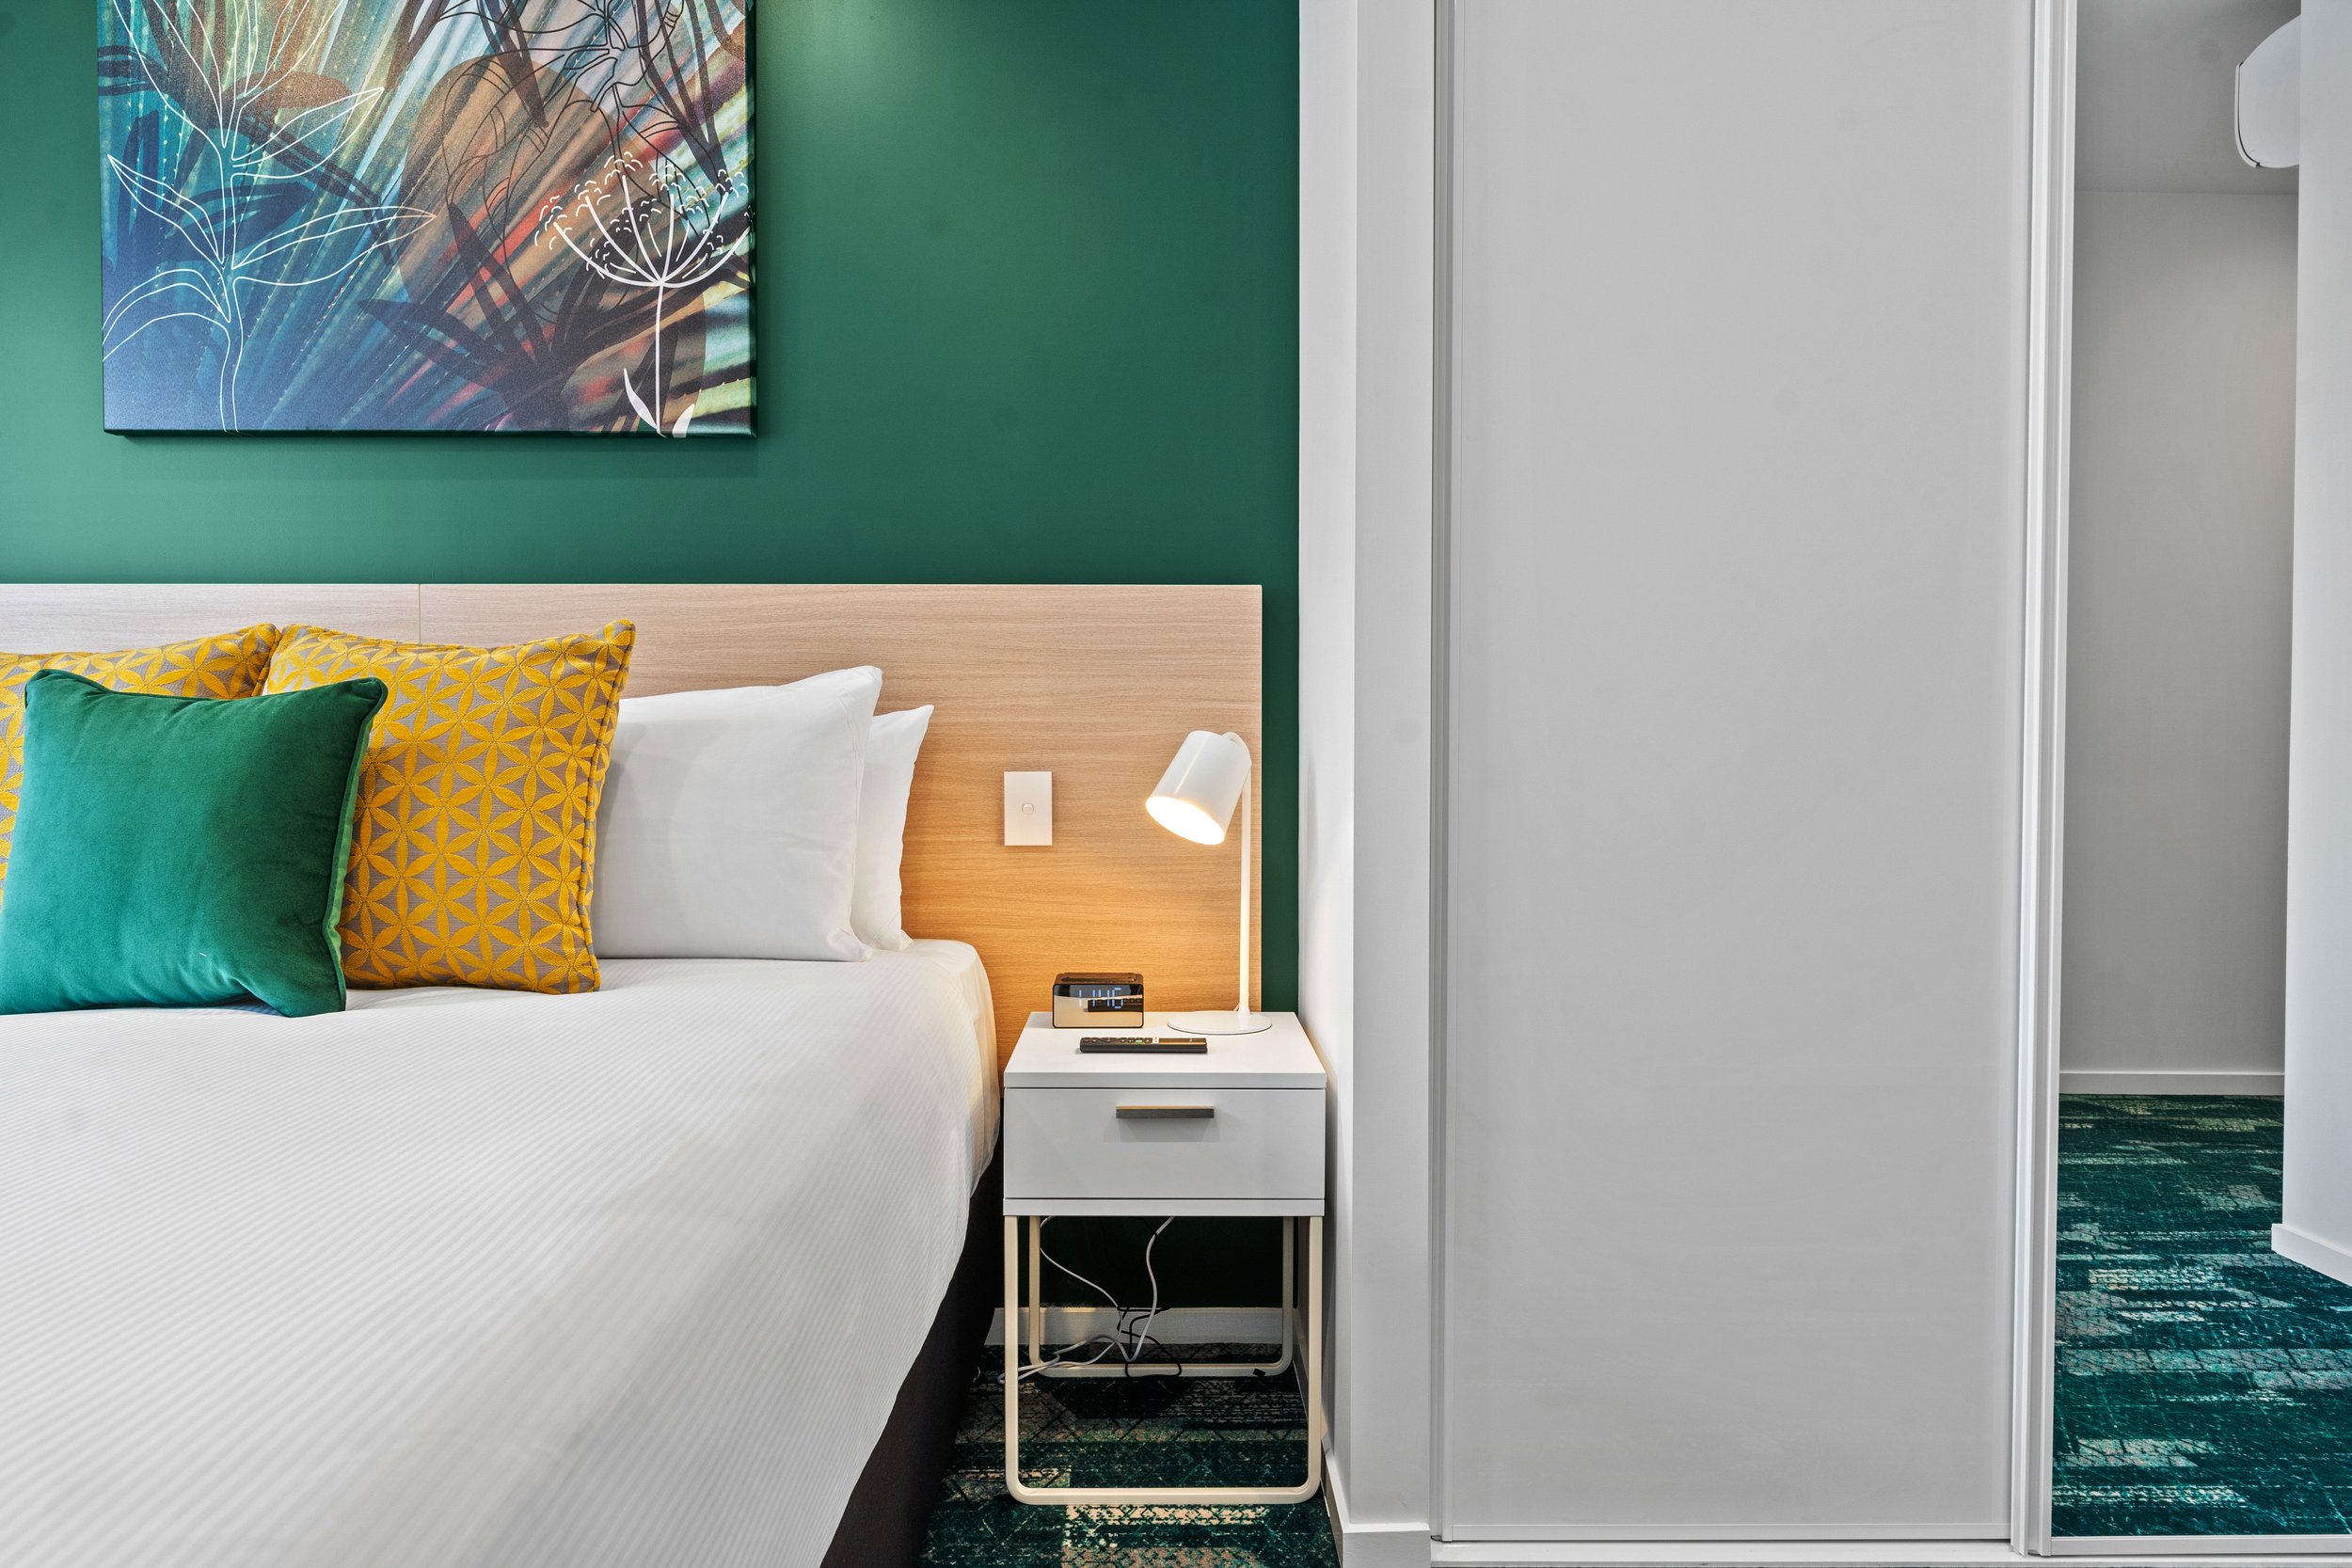 La Quinta Hotel Auckland Artwork by Hay Hay Design